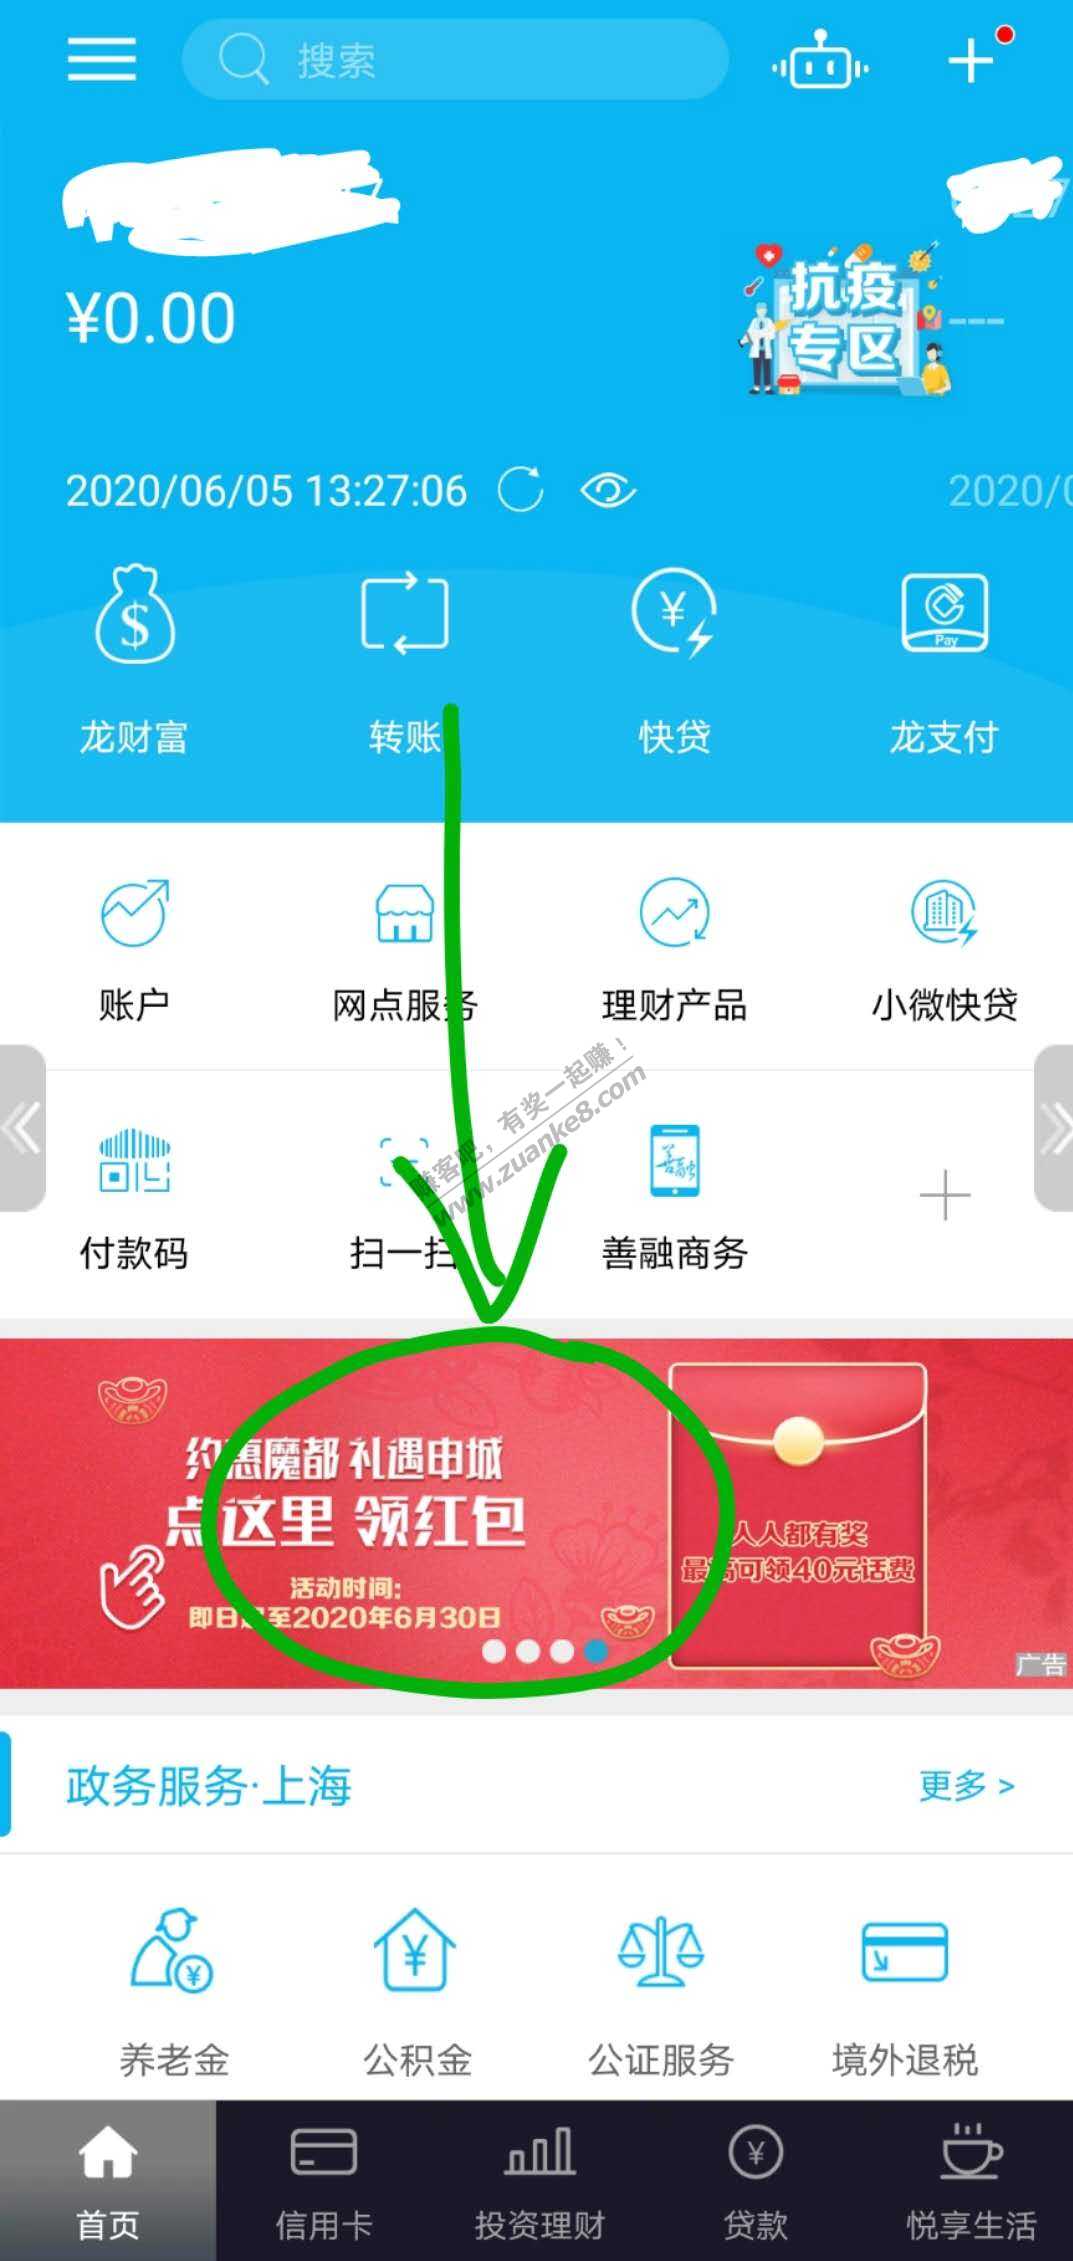 上海建行APP-花费两三分钱-买10-15元话费-秒到账。。。-惠小助(52huixz.com)